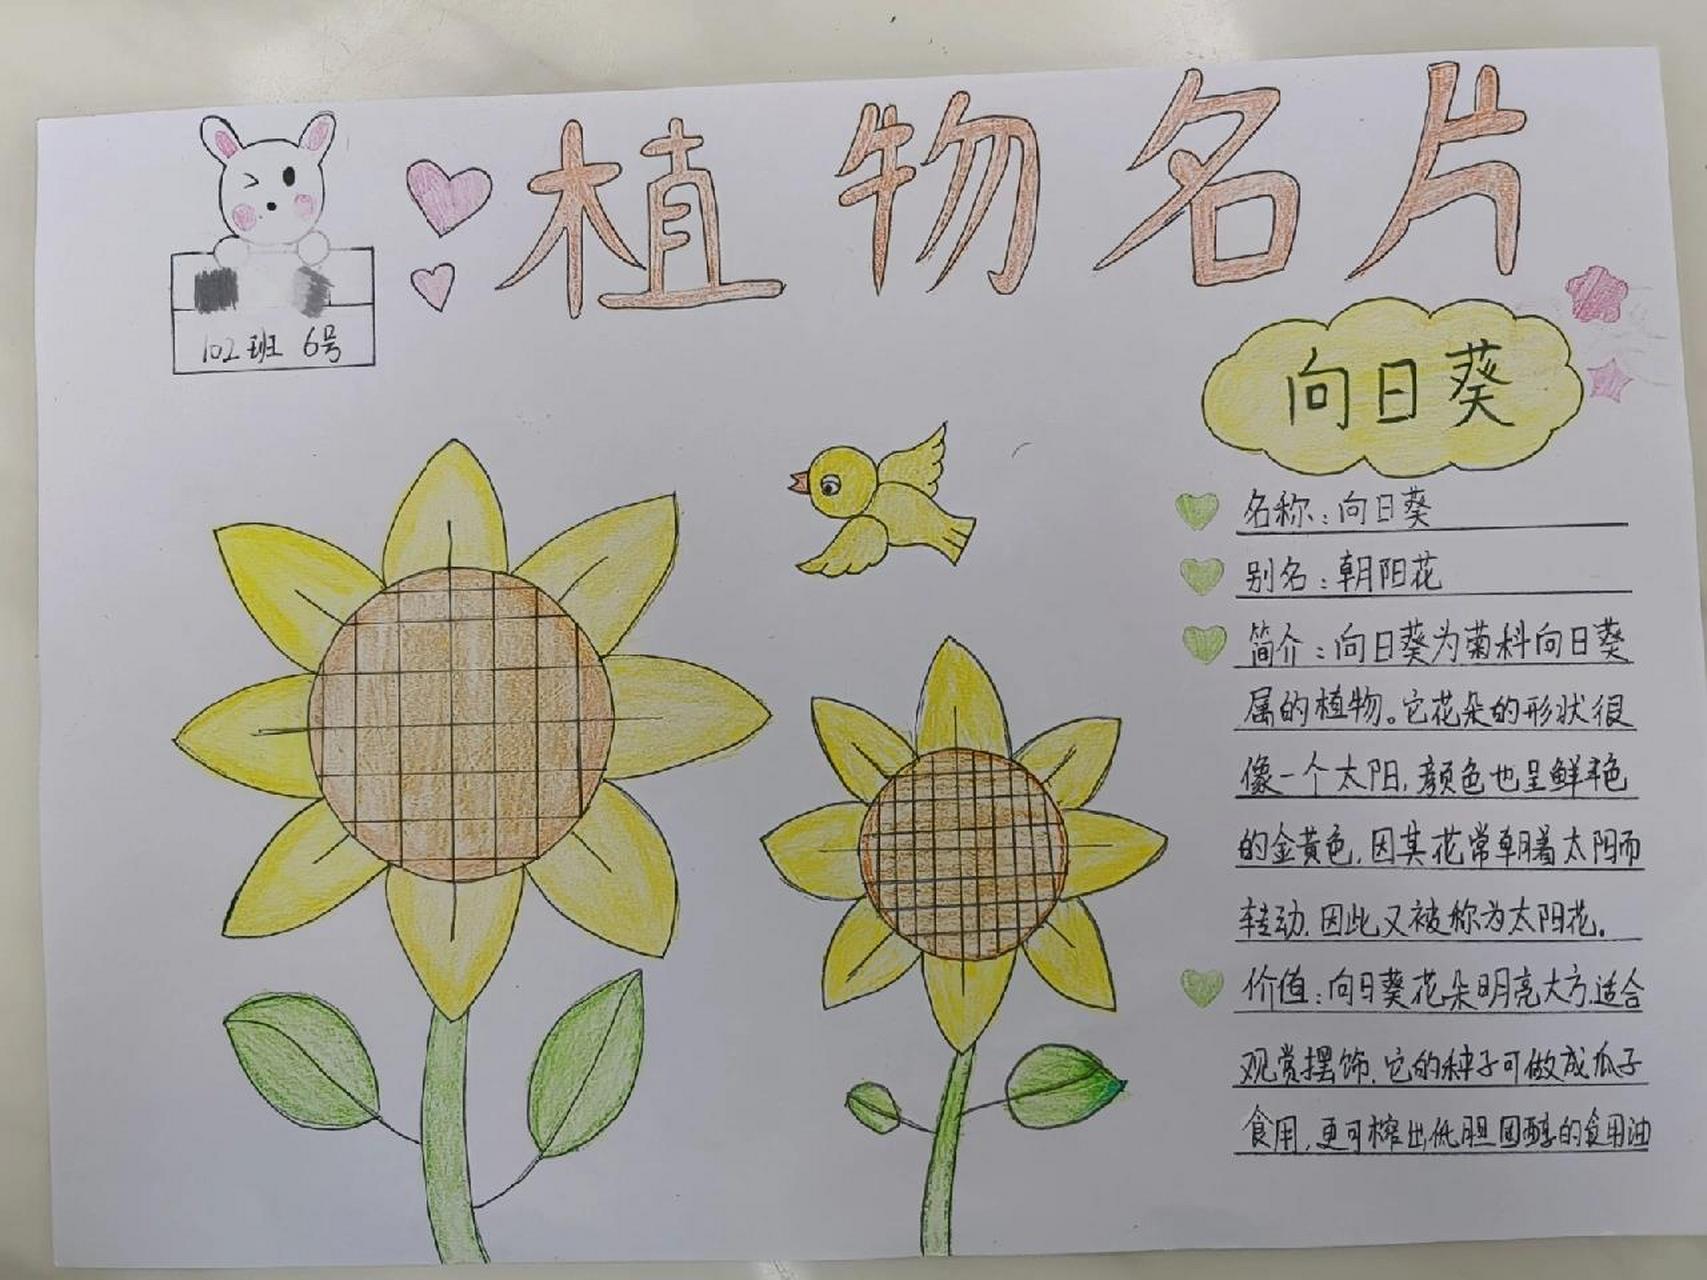 向日葵植物记录卡其它图片